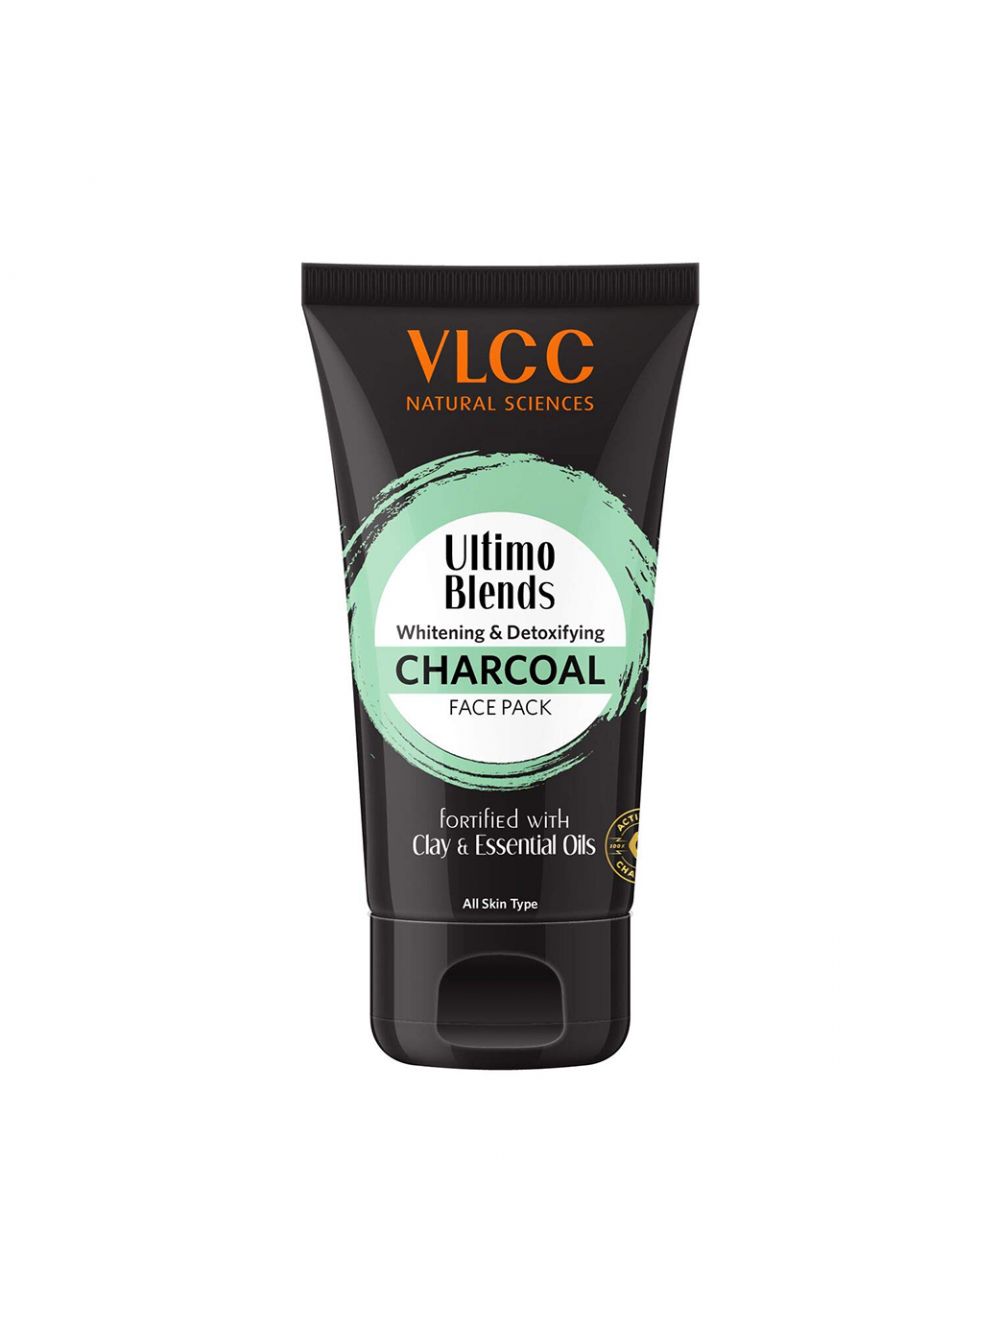 VLCC Ultimo Blends Charcoal Face Pack (100gm) - Niram